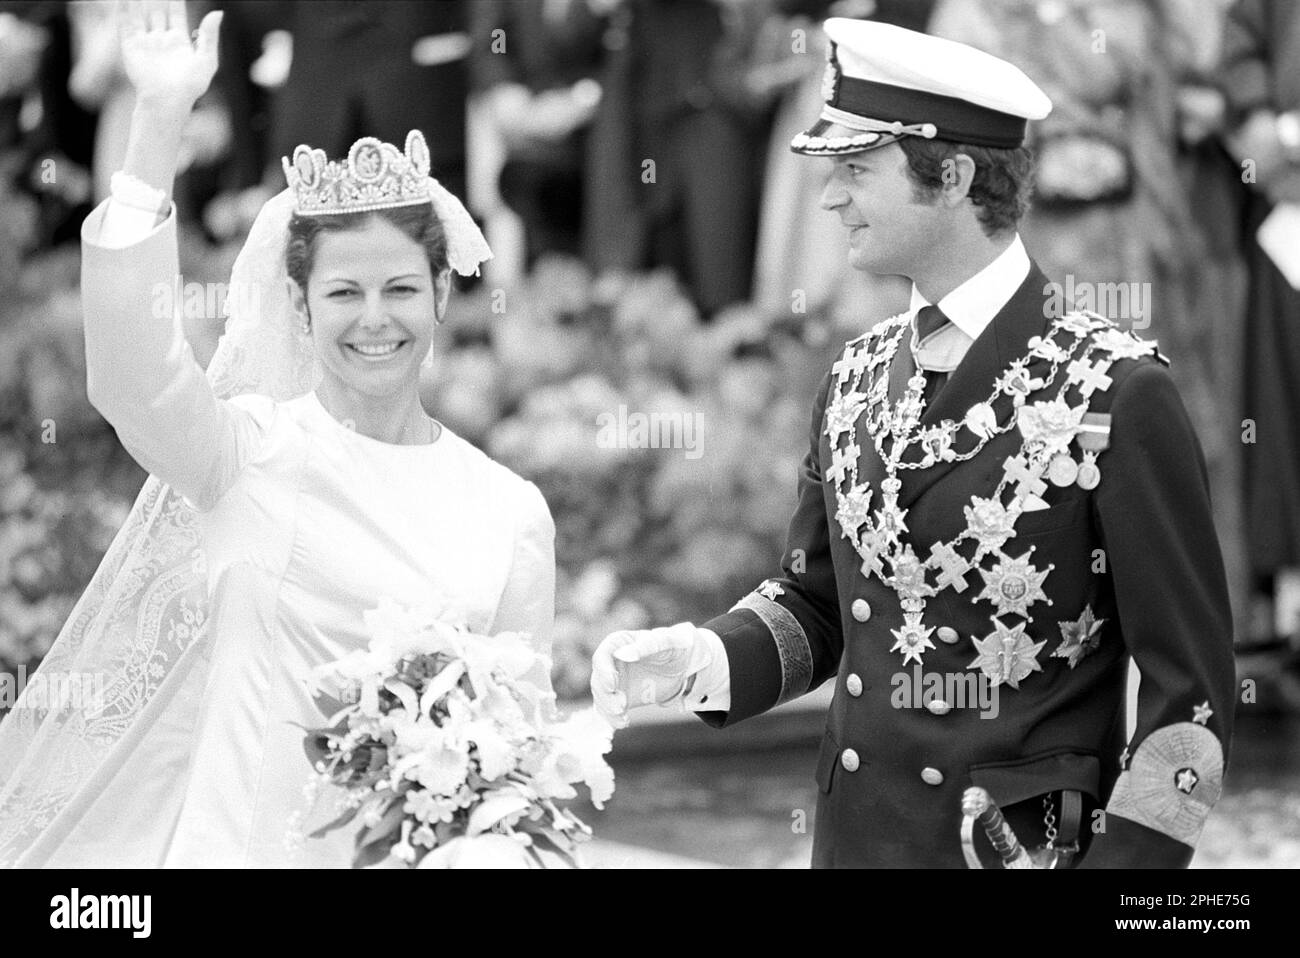 Matrimonio di Carlo XVI Gustaf e Silvia Sommerlath. Carl XVI Gustaf, re di Svezia. Nato il 30 aprile 1946. Il matrimonio 19 giugno 1976 a Stoccolma. Regina Silvia nel suo abito da sposa con re Carl XVI Gustaf. Foto Stock